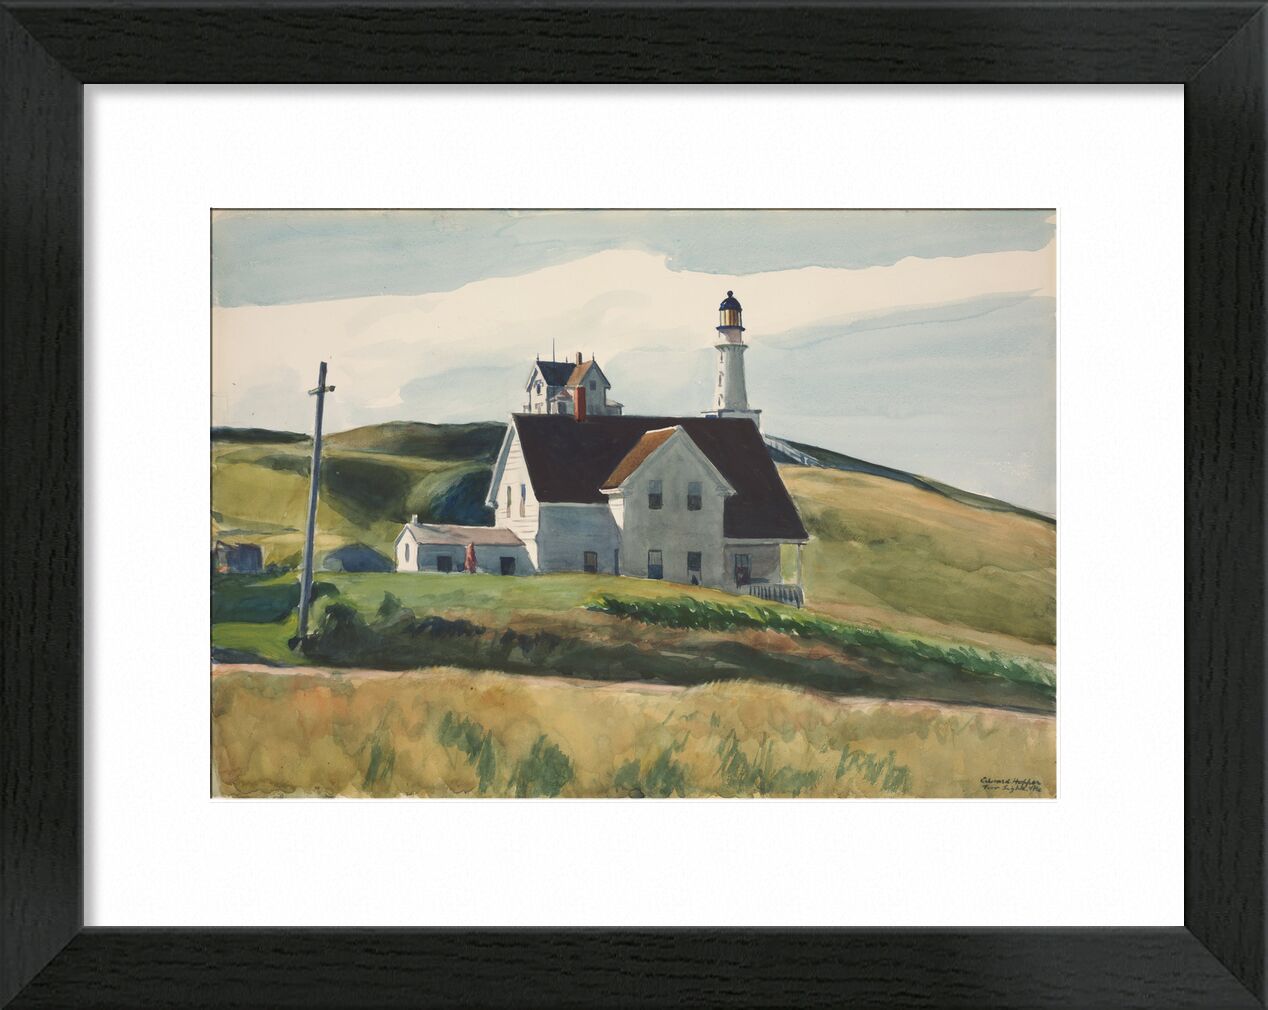 Hügel und Häuser, Cape Elizabeth, Maine - Edward Hopper von Bildende Kunst, Prodi Art, Edward Hopper, Häuser, Landschaft, hügel, Wiesen, Leuchtturm, Landschaft